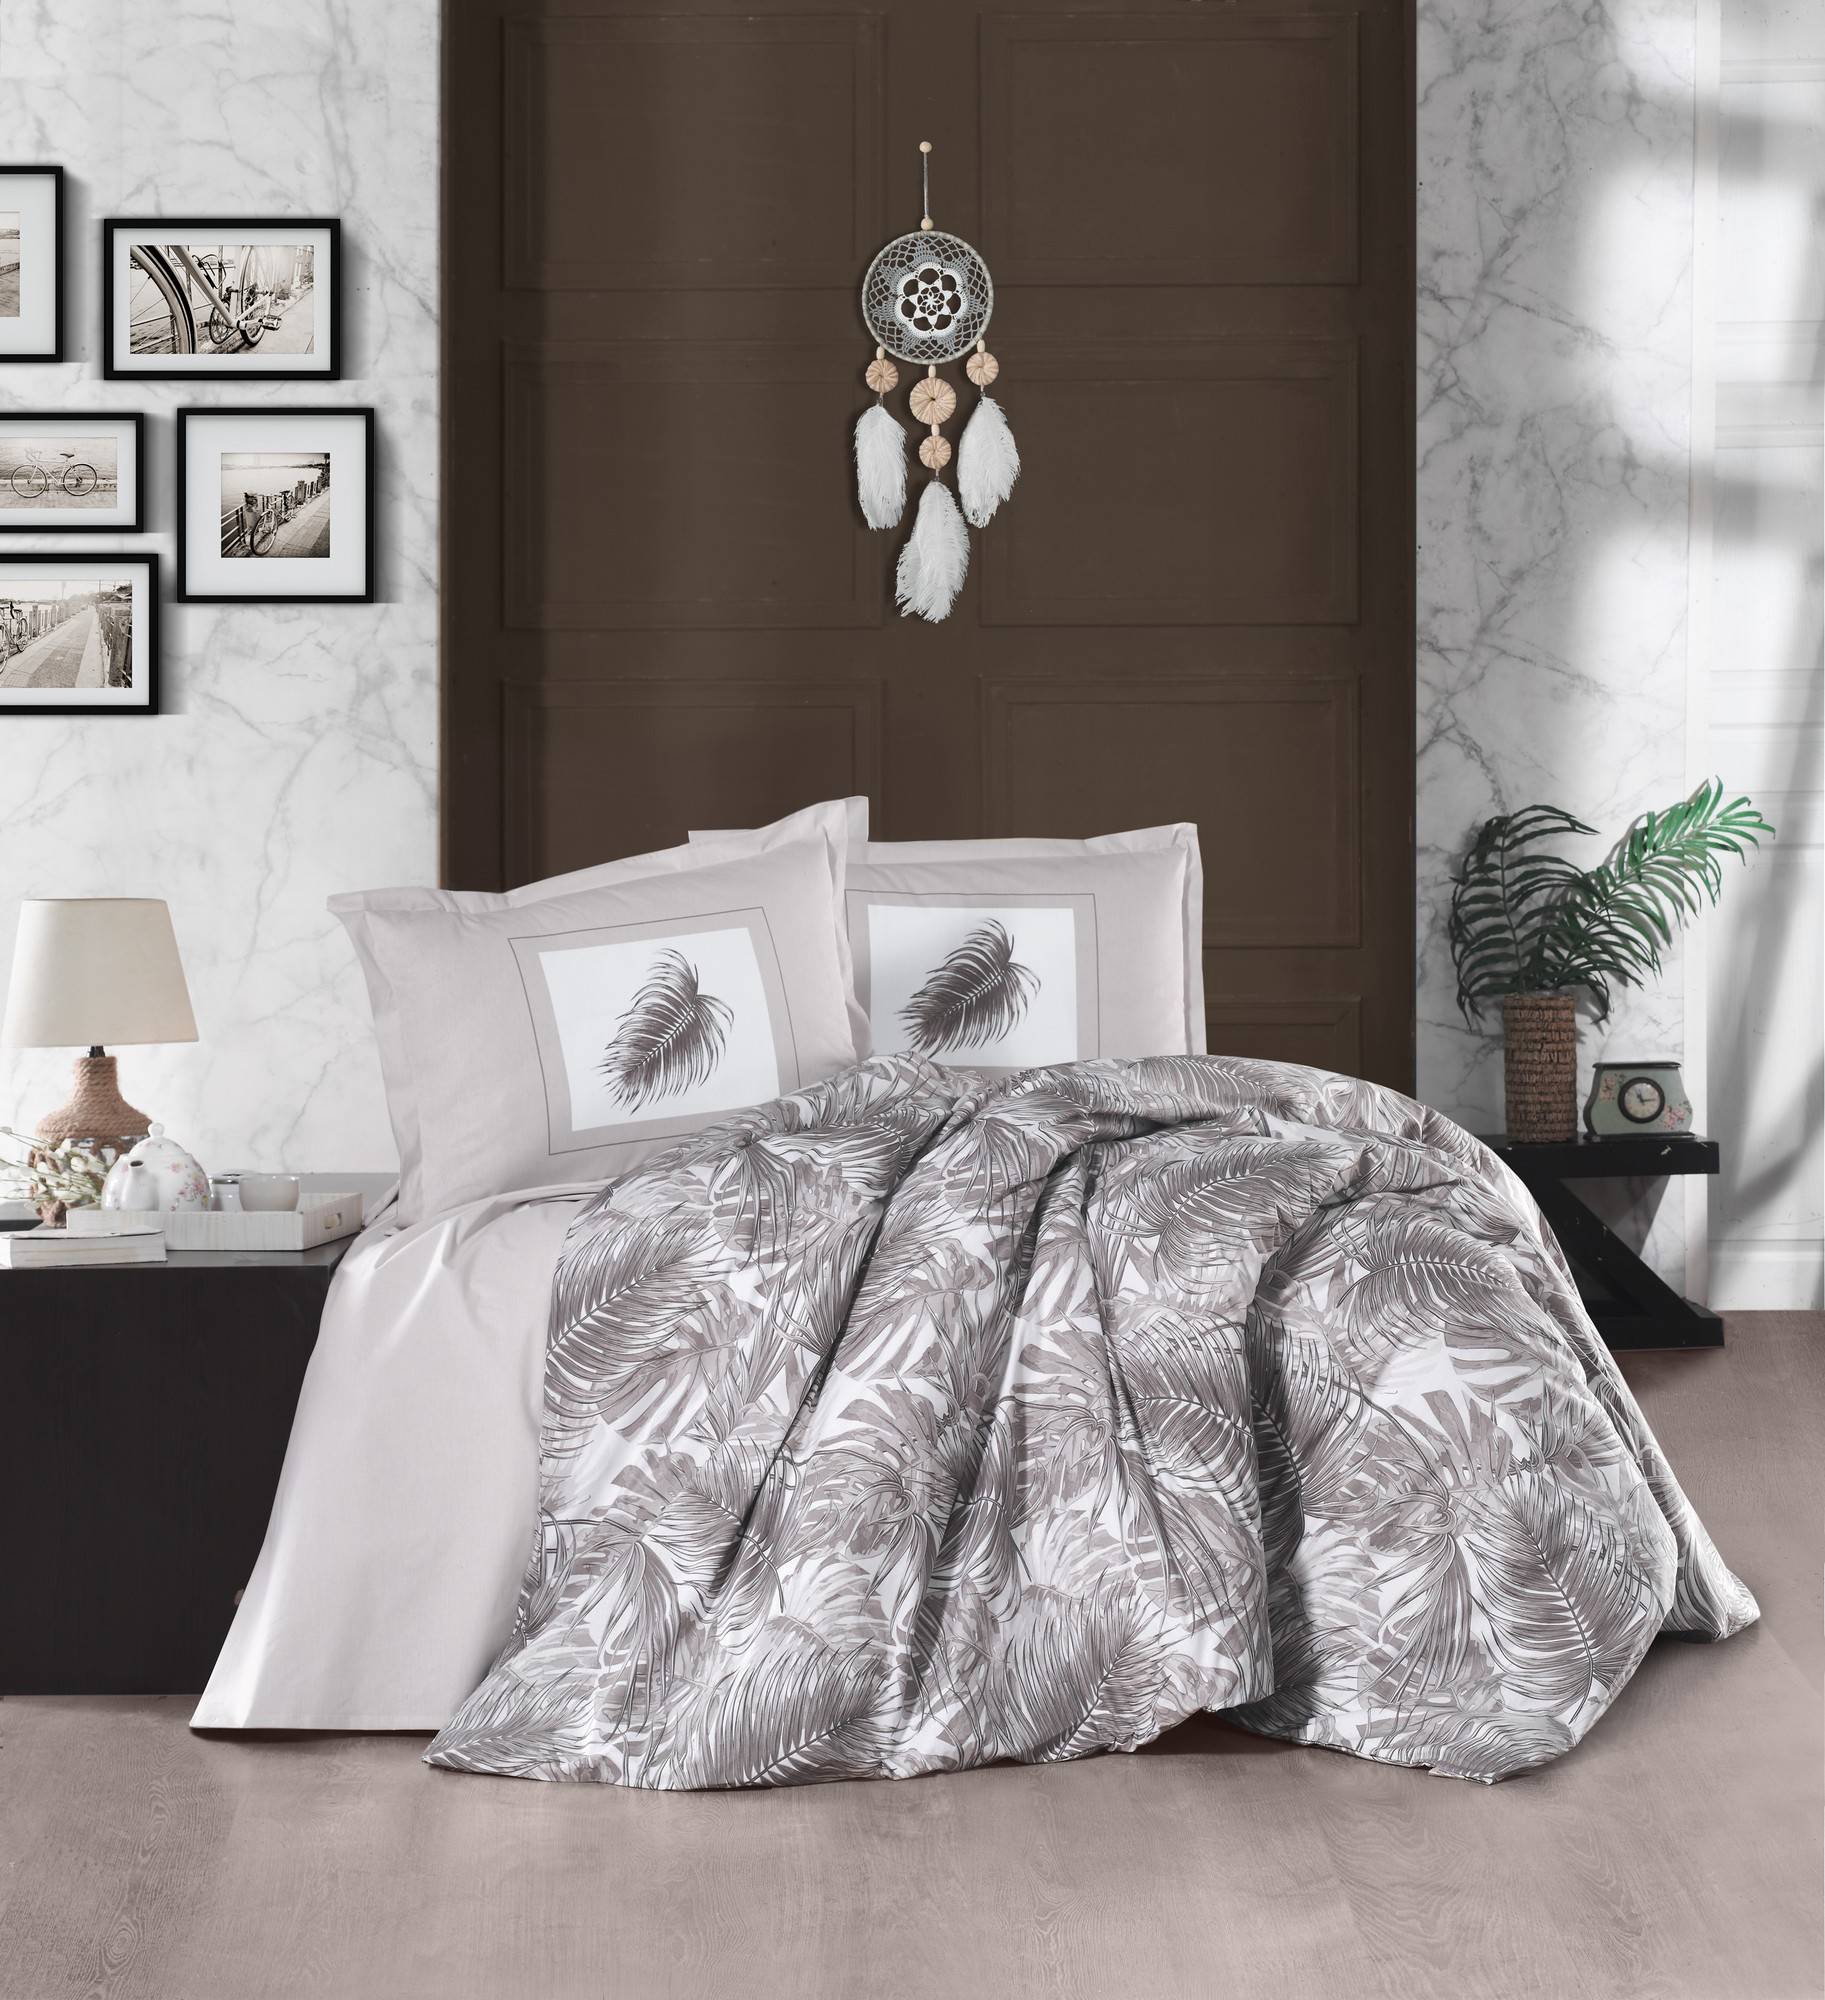 Set Bettbezug 240x200cm und 2 Kissenbezüge 60x60cm Pruma 100% baumwollstoff Blättermotiv Grau und Weiß